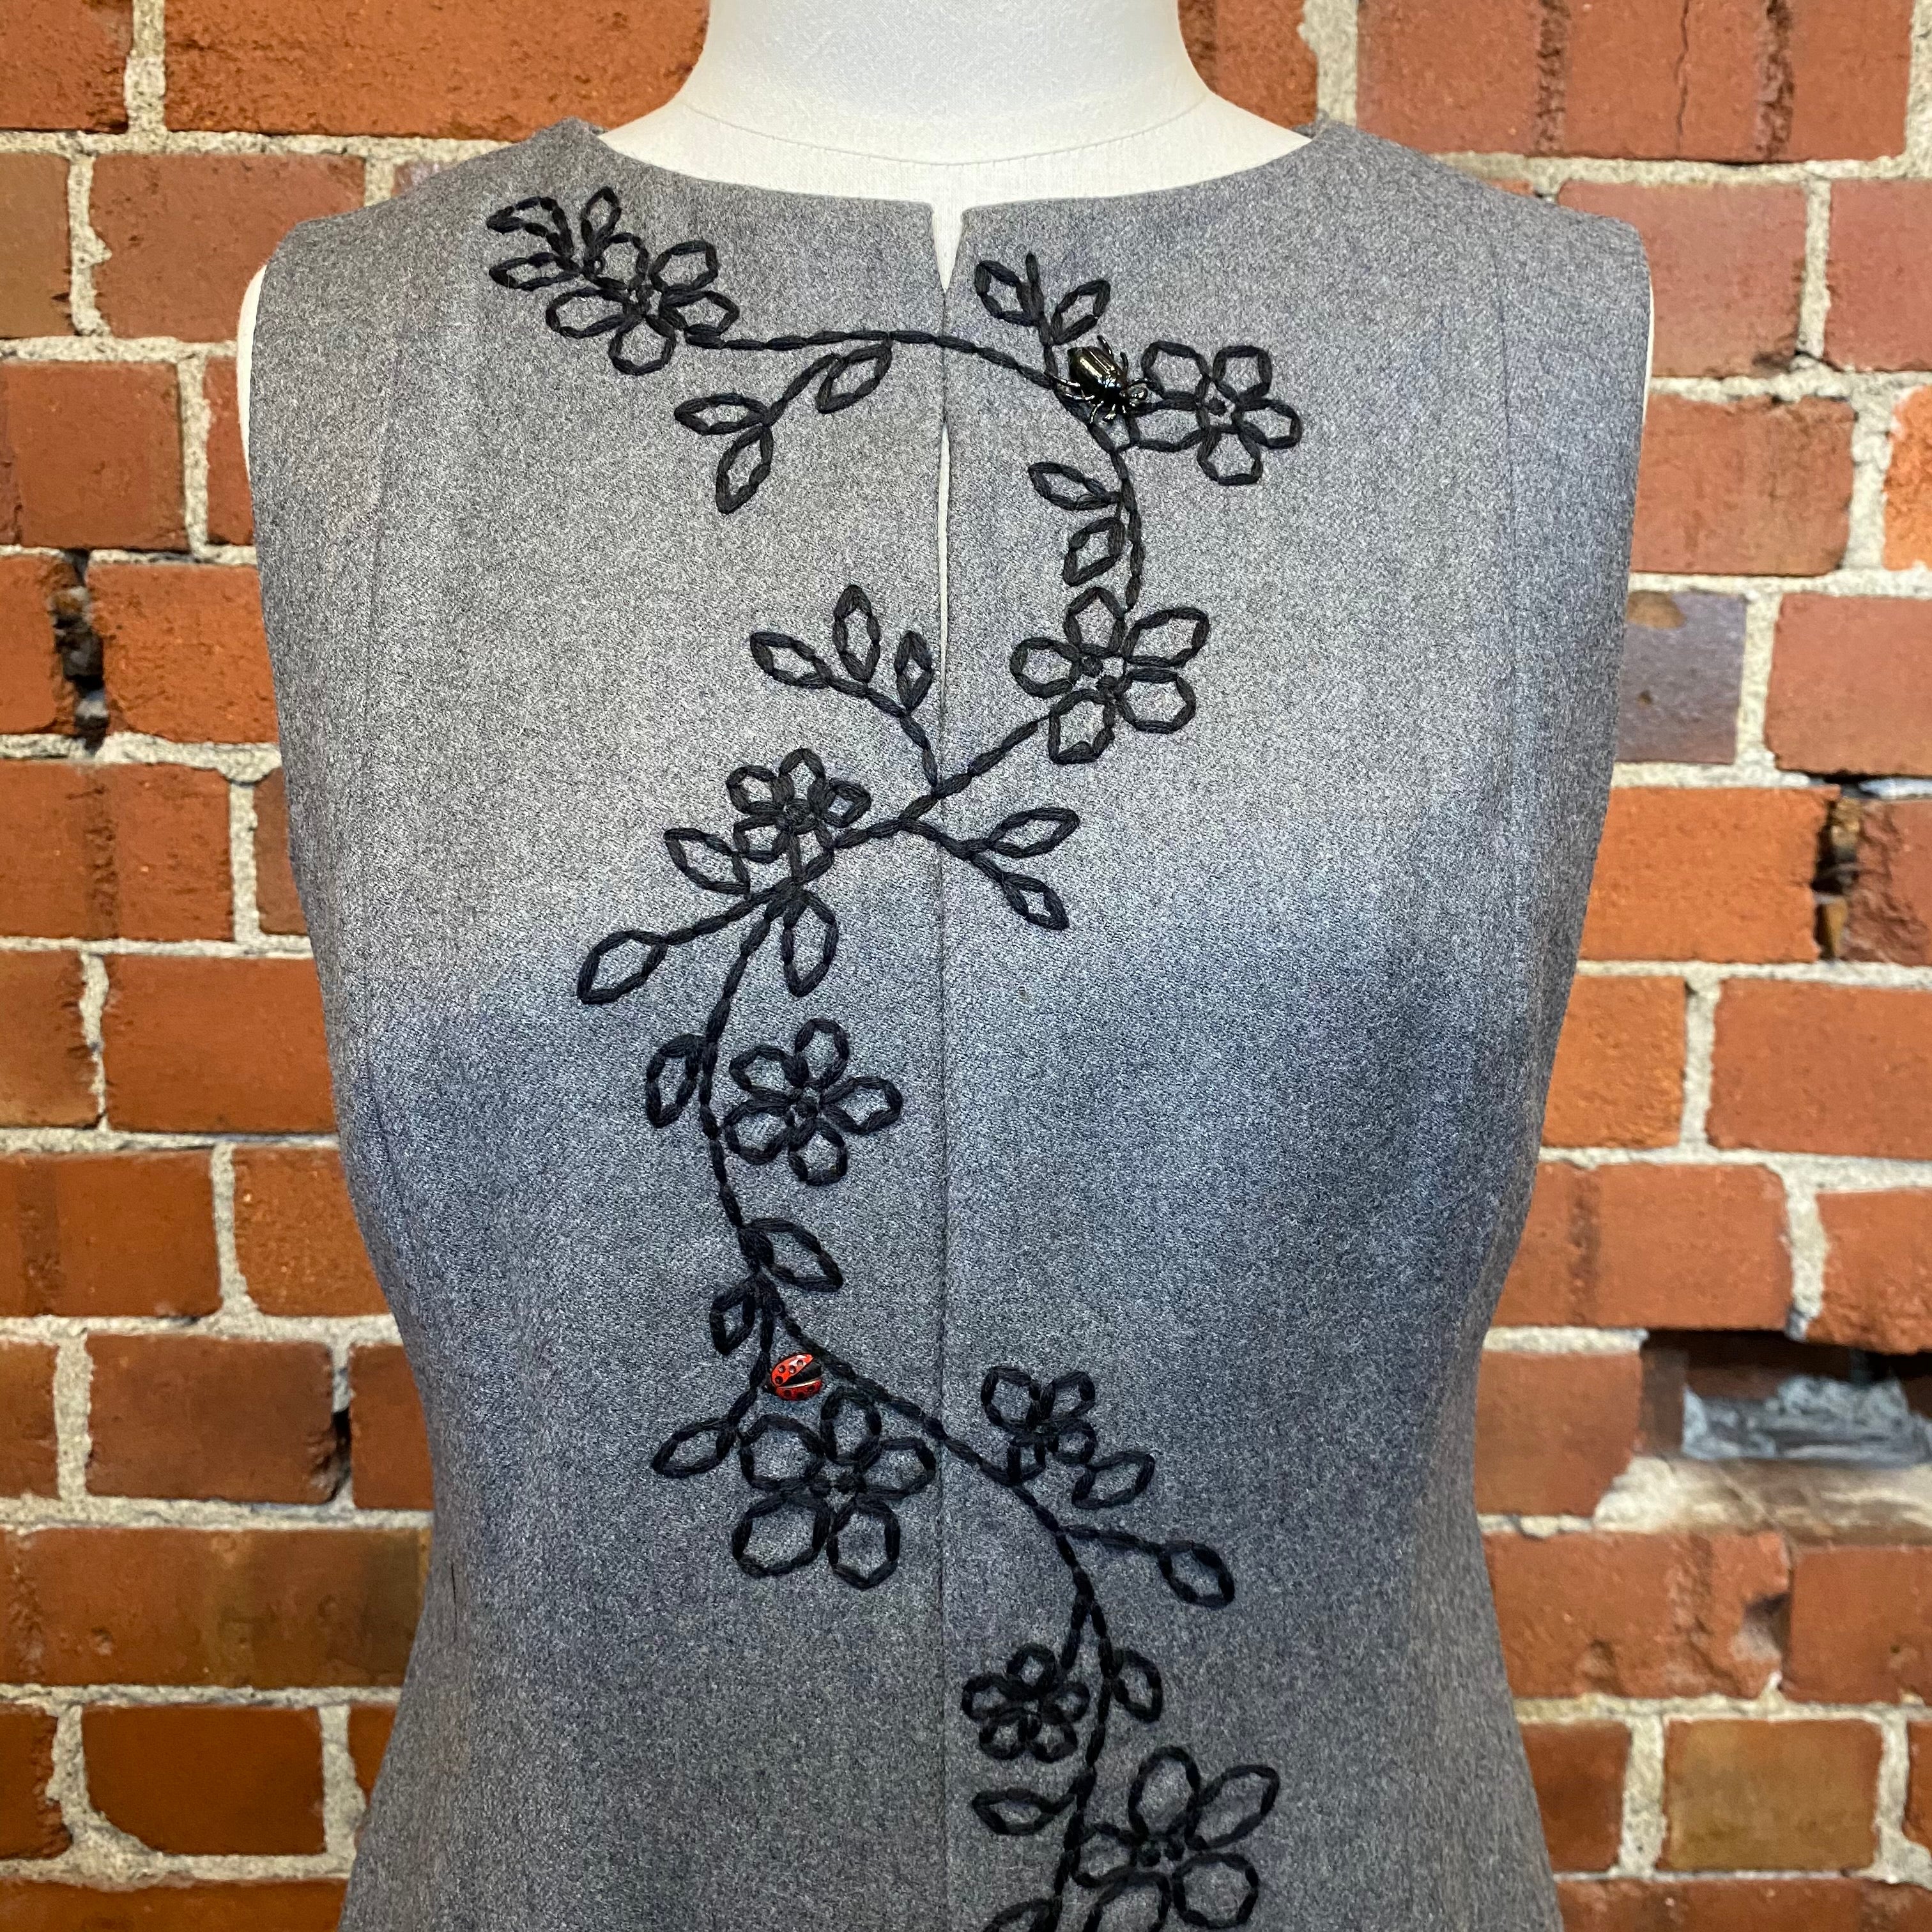 MOSCHINO garden embroided wool dress